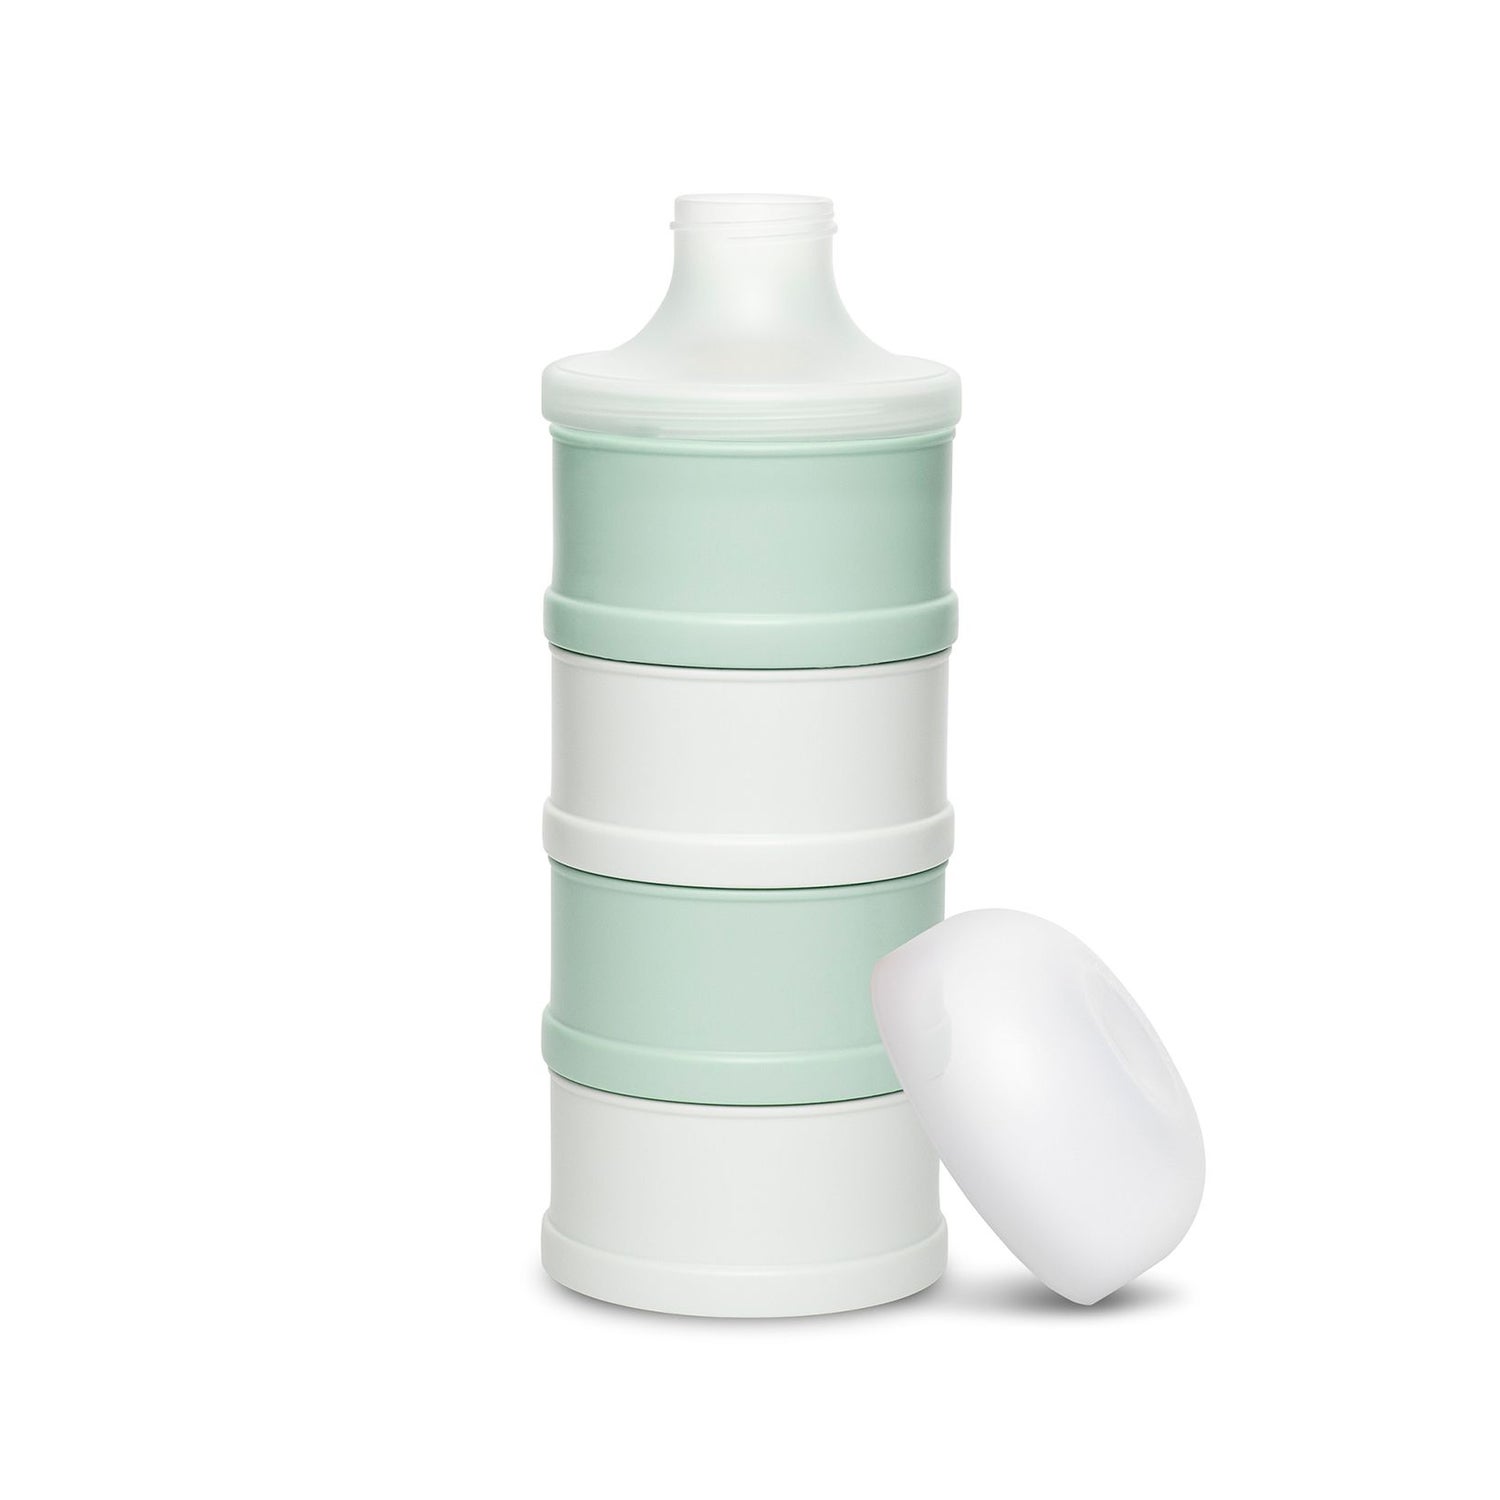 Dodie Doseur de lait à 3 compartiments - Accessoire pour bébé